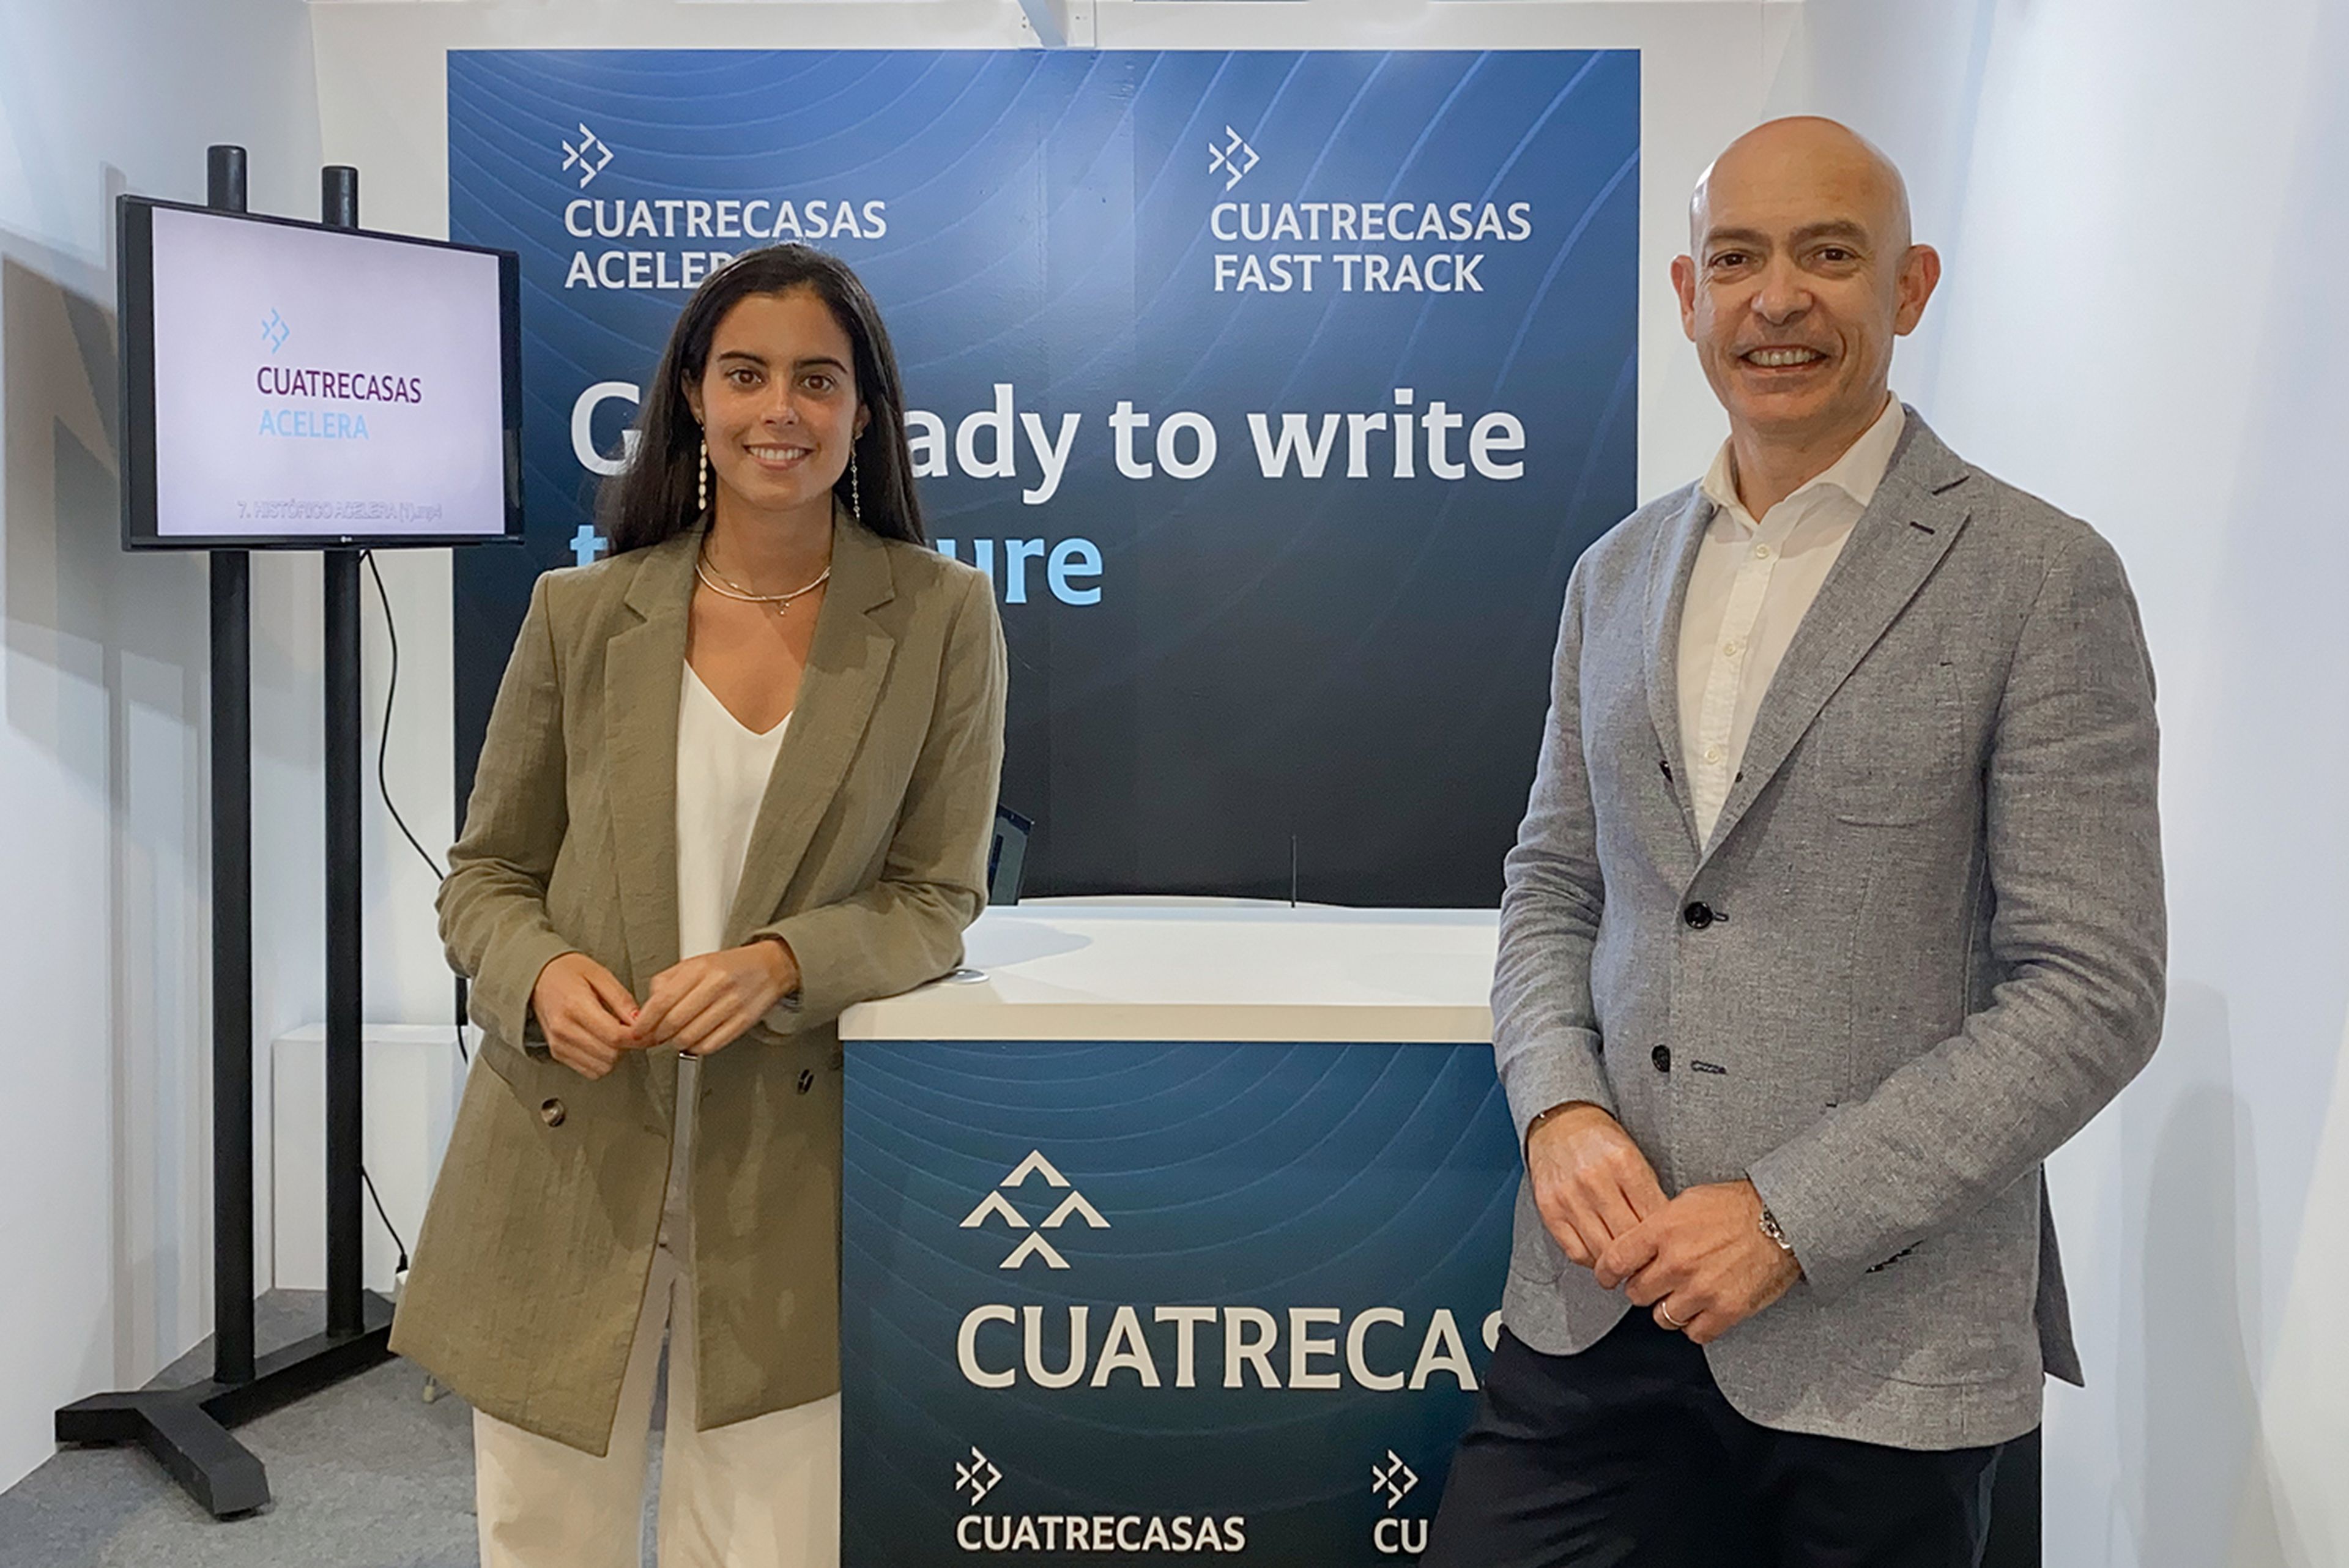 Alba Molina Marcos, Innovation Project Manager de Cuatrecasas, junto a Francesc Muñoz, CIO de Cuatrecasas.